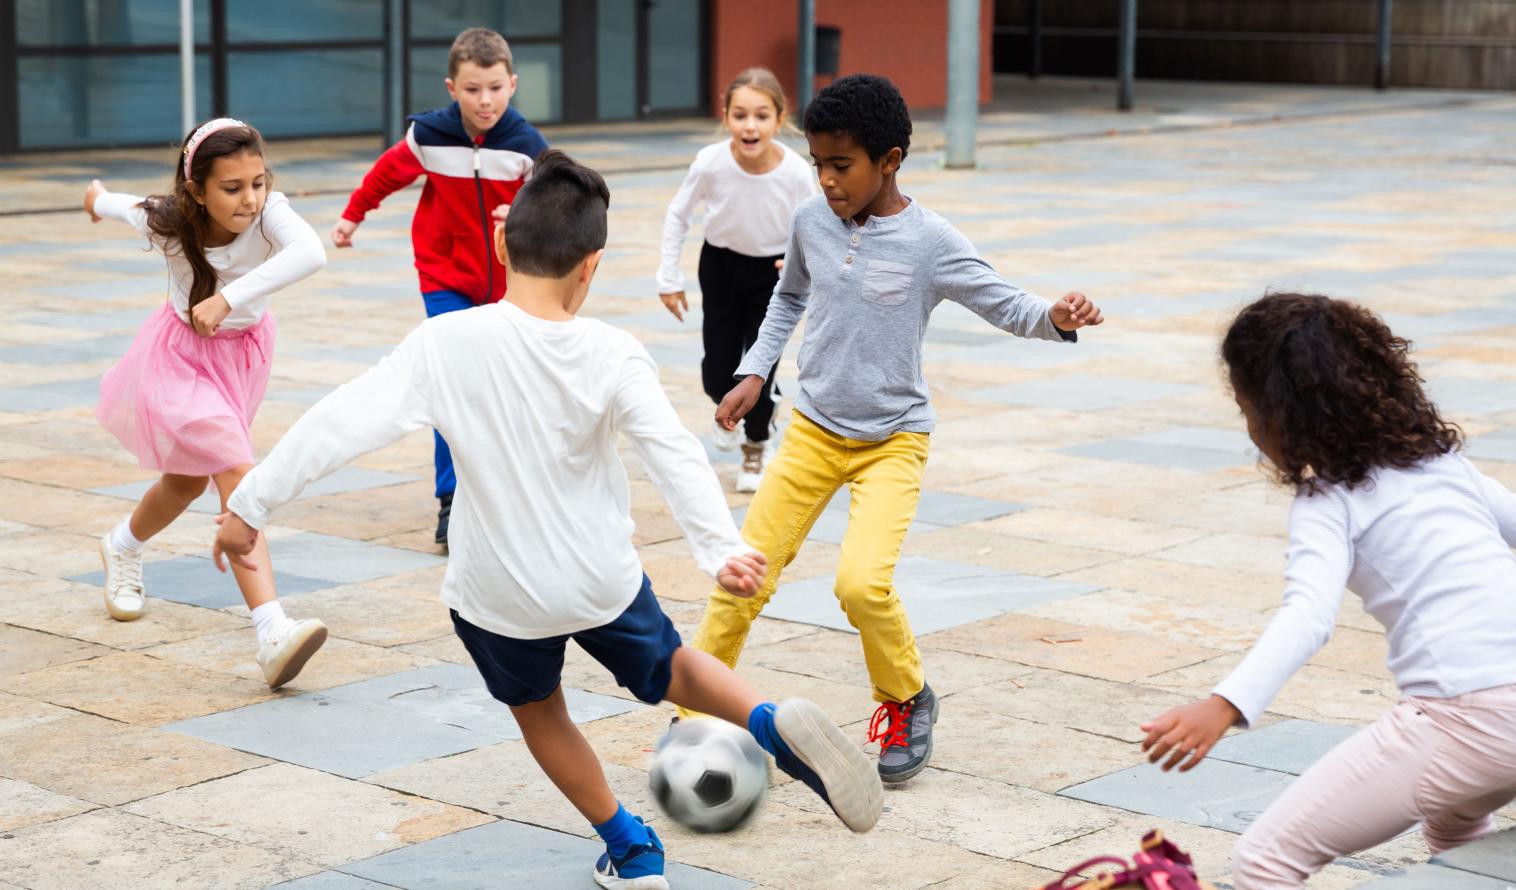 Schulkinder spielen mit einem Ball in der Nähe des Schulgebäudes